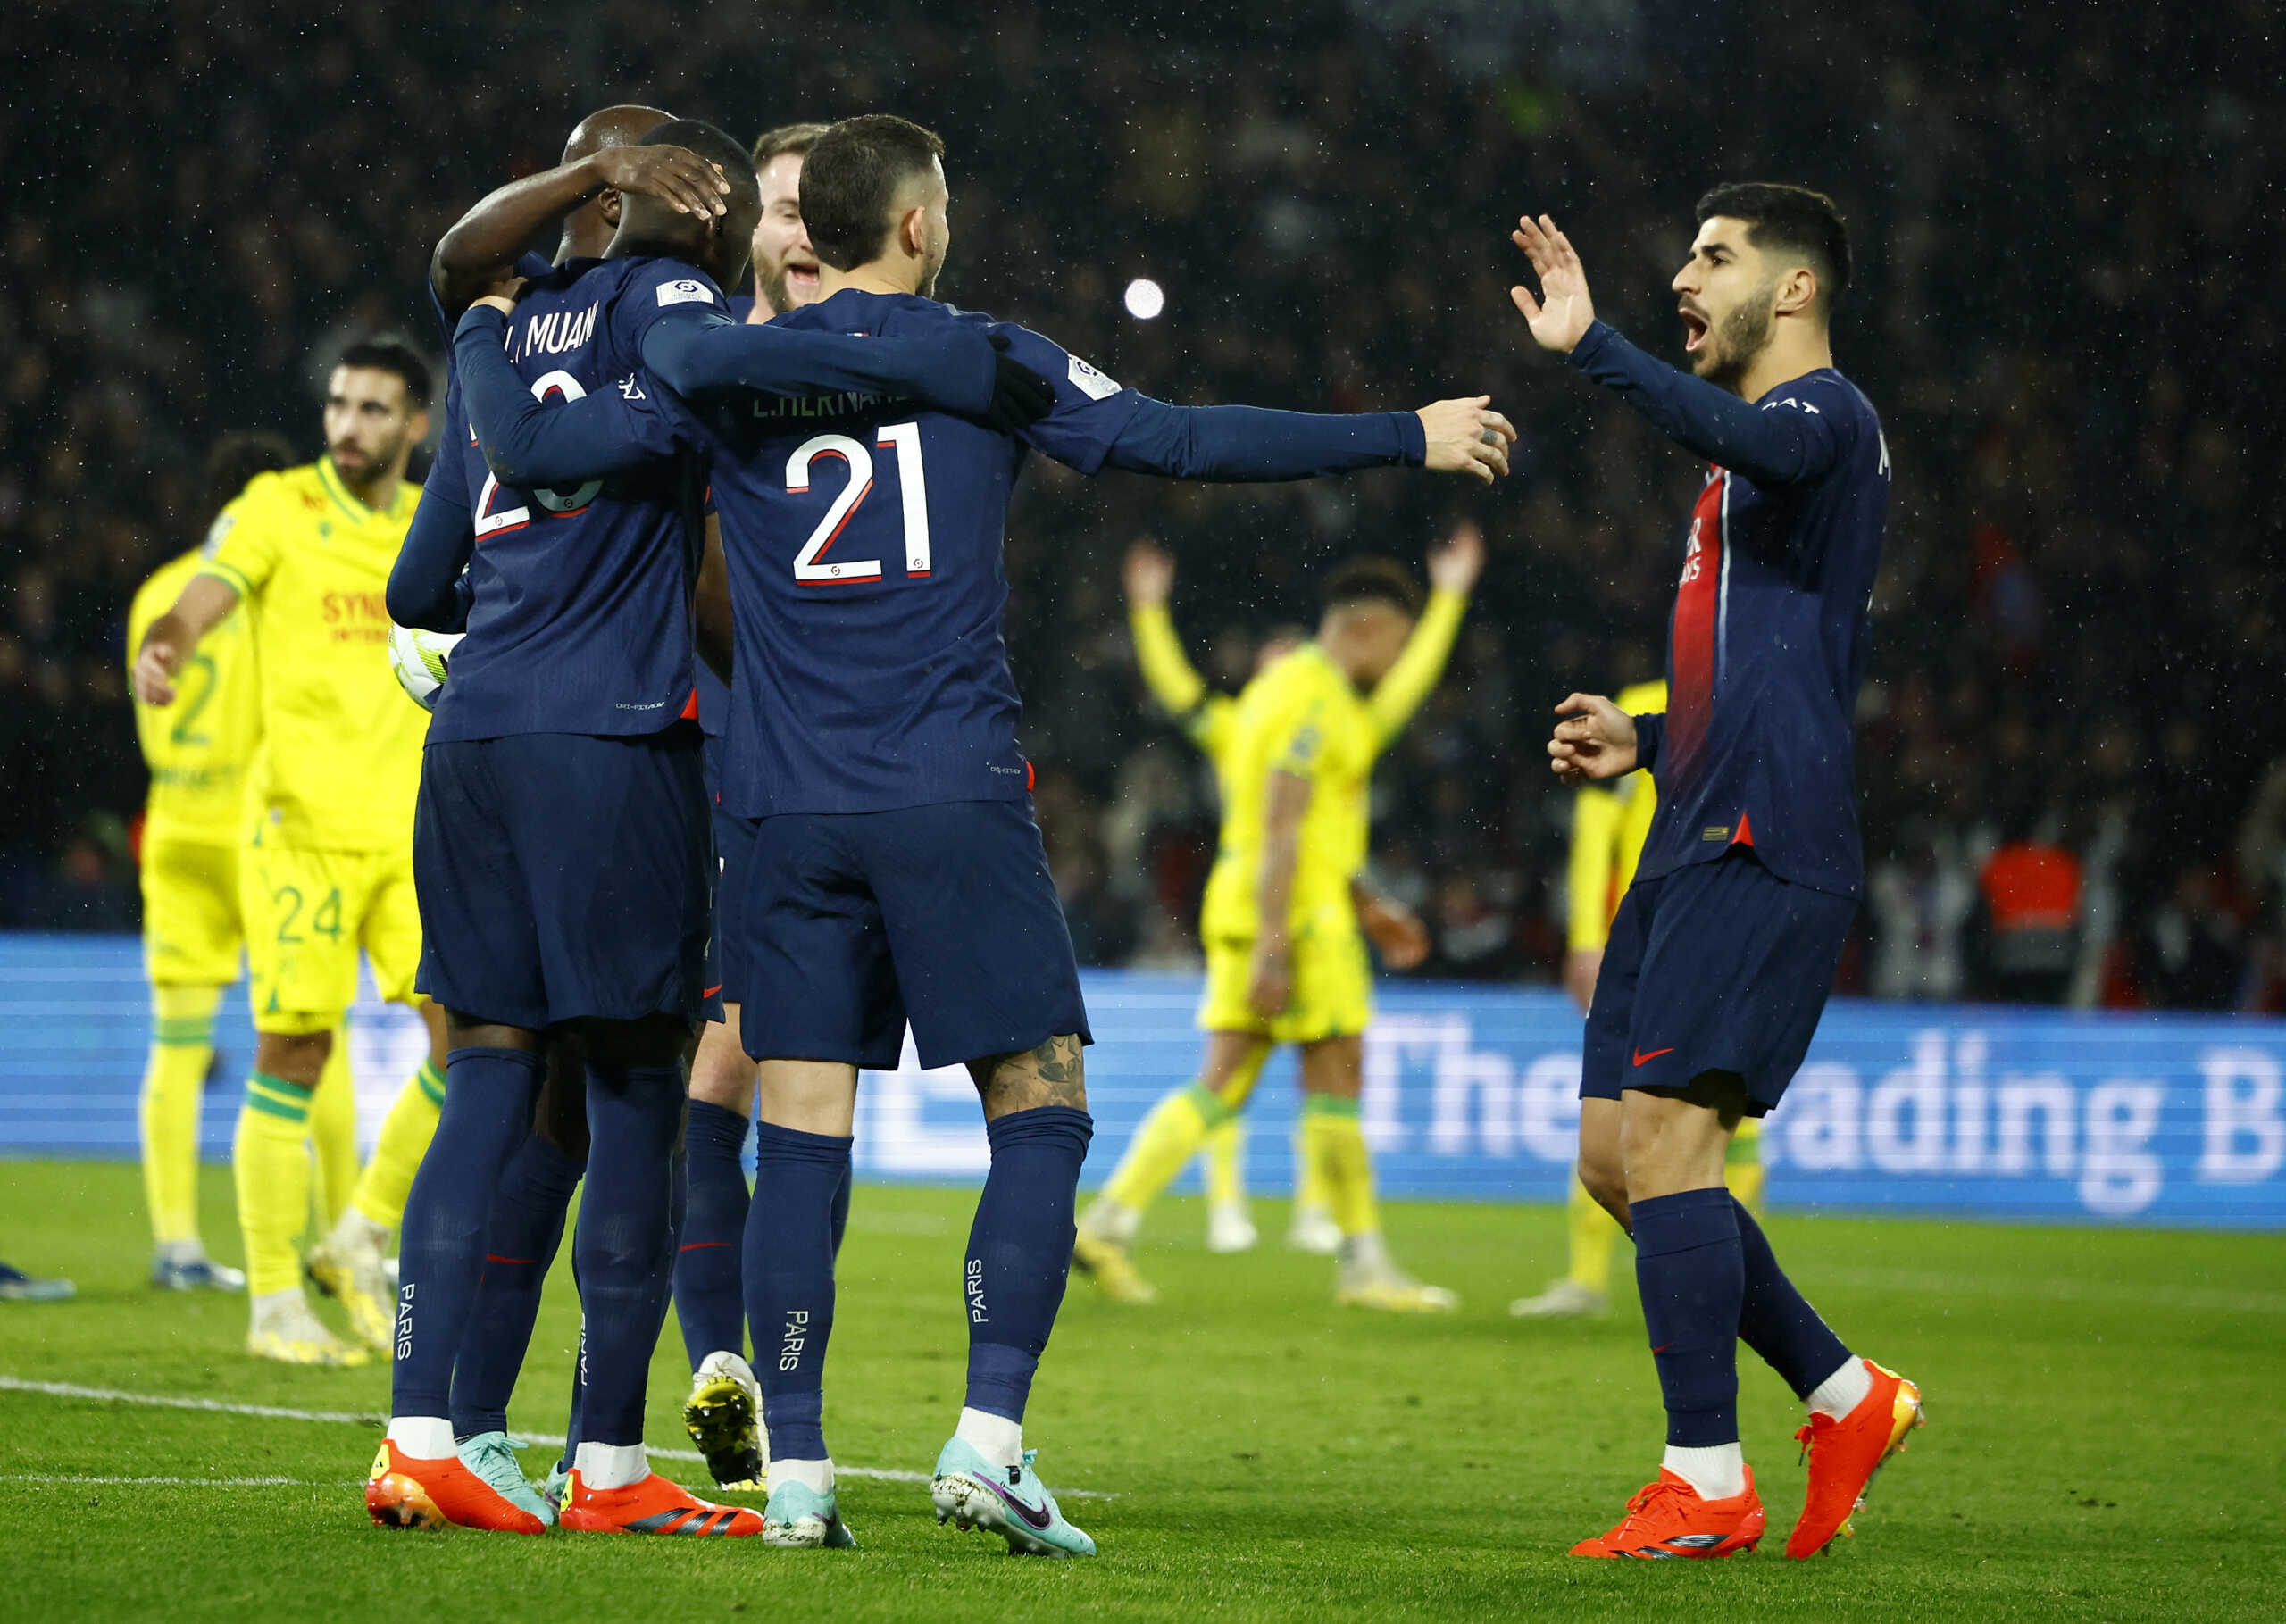 Παρί Σεν Ζερμέν – Ναντ 2-1: Δύσκολη νίκη με γκολ στο φινάλε για τους Παριζιάνους στη Ligue 1